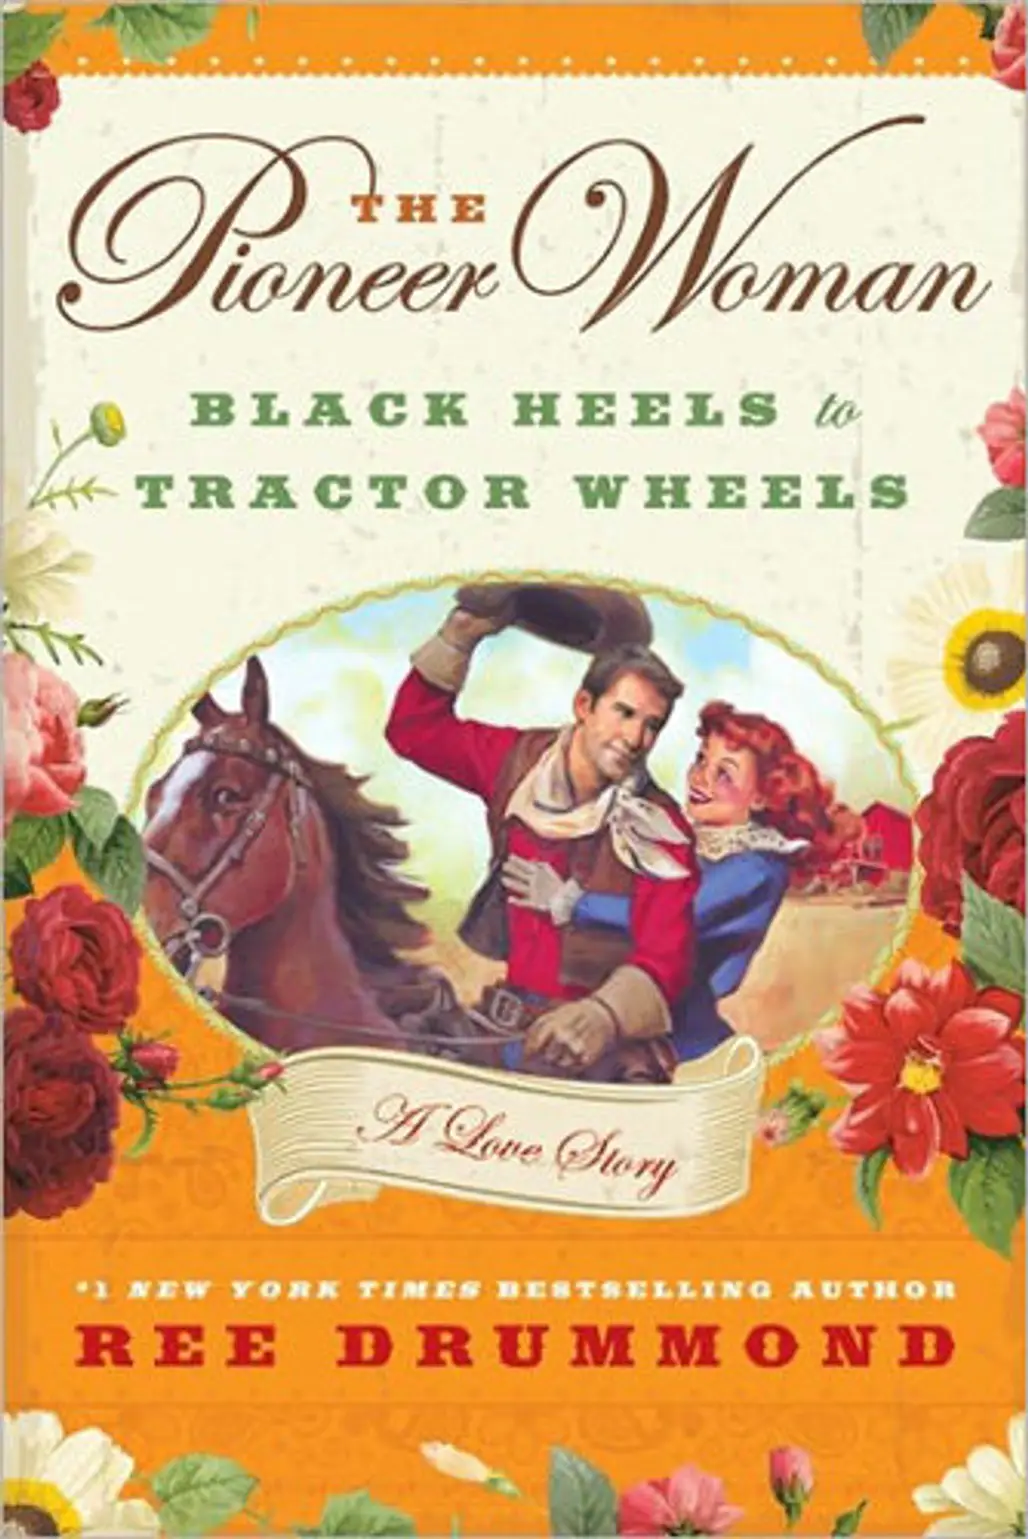 “the Pioneer Woman: Black Heels to Tractor Wheels” by Ree Drummond